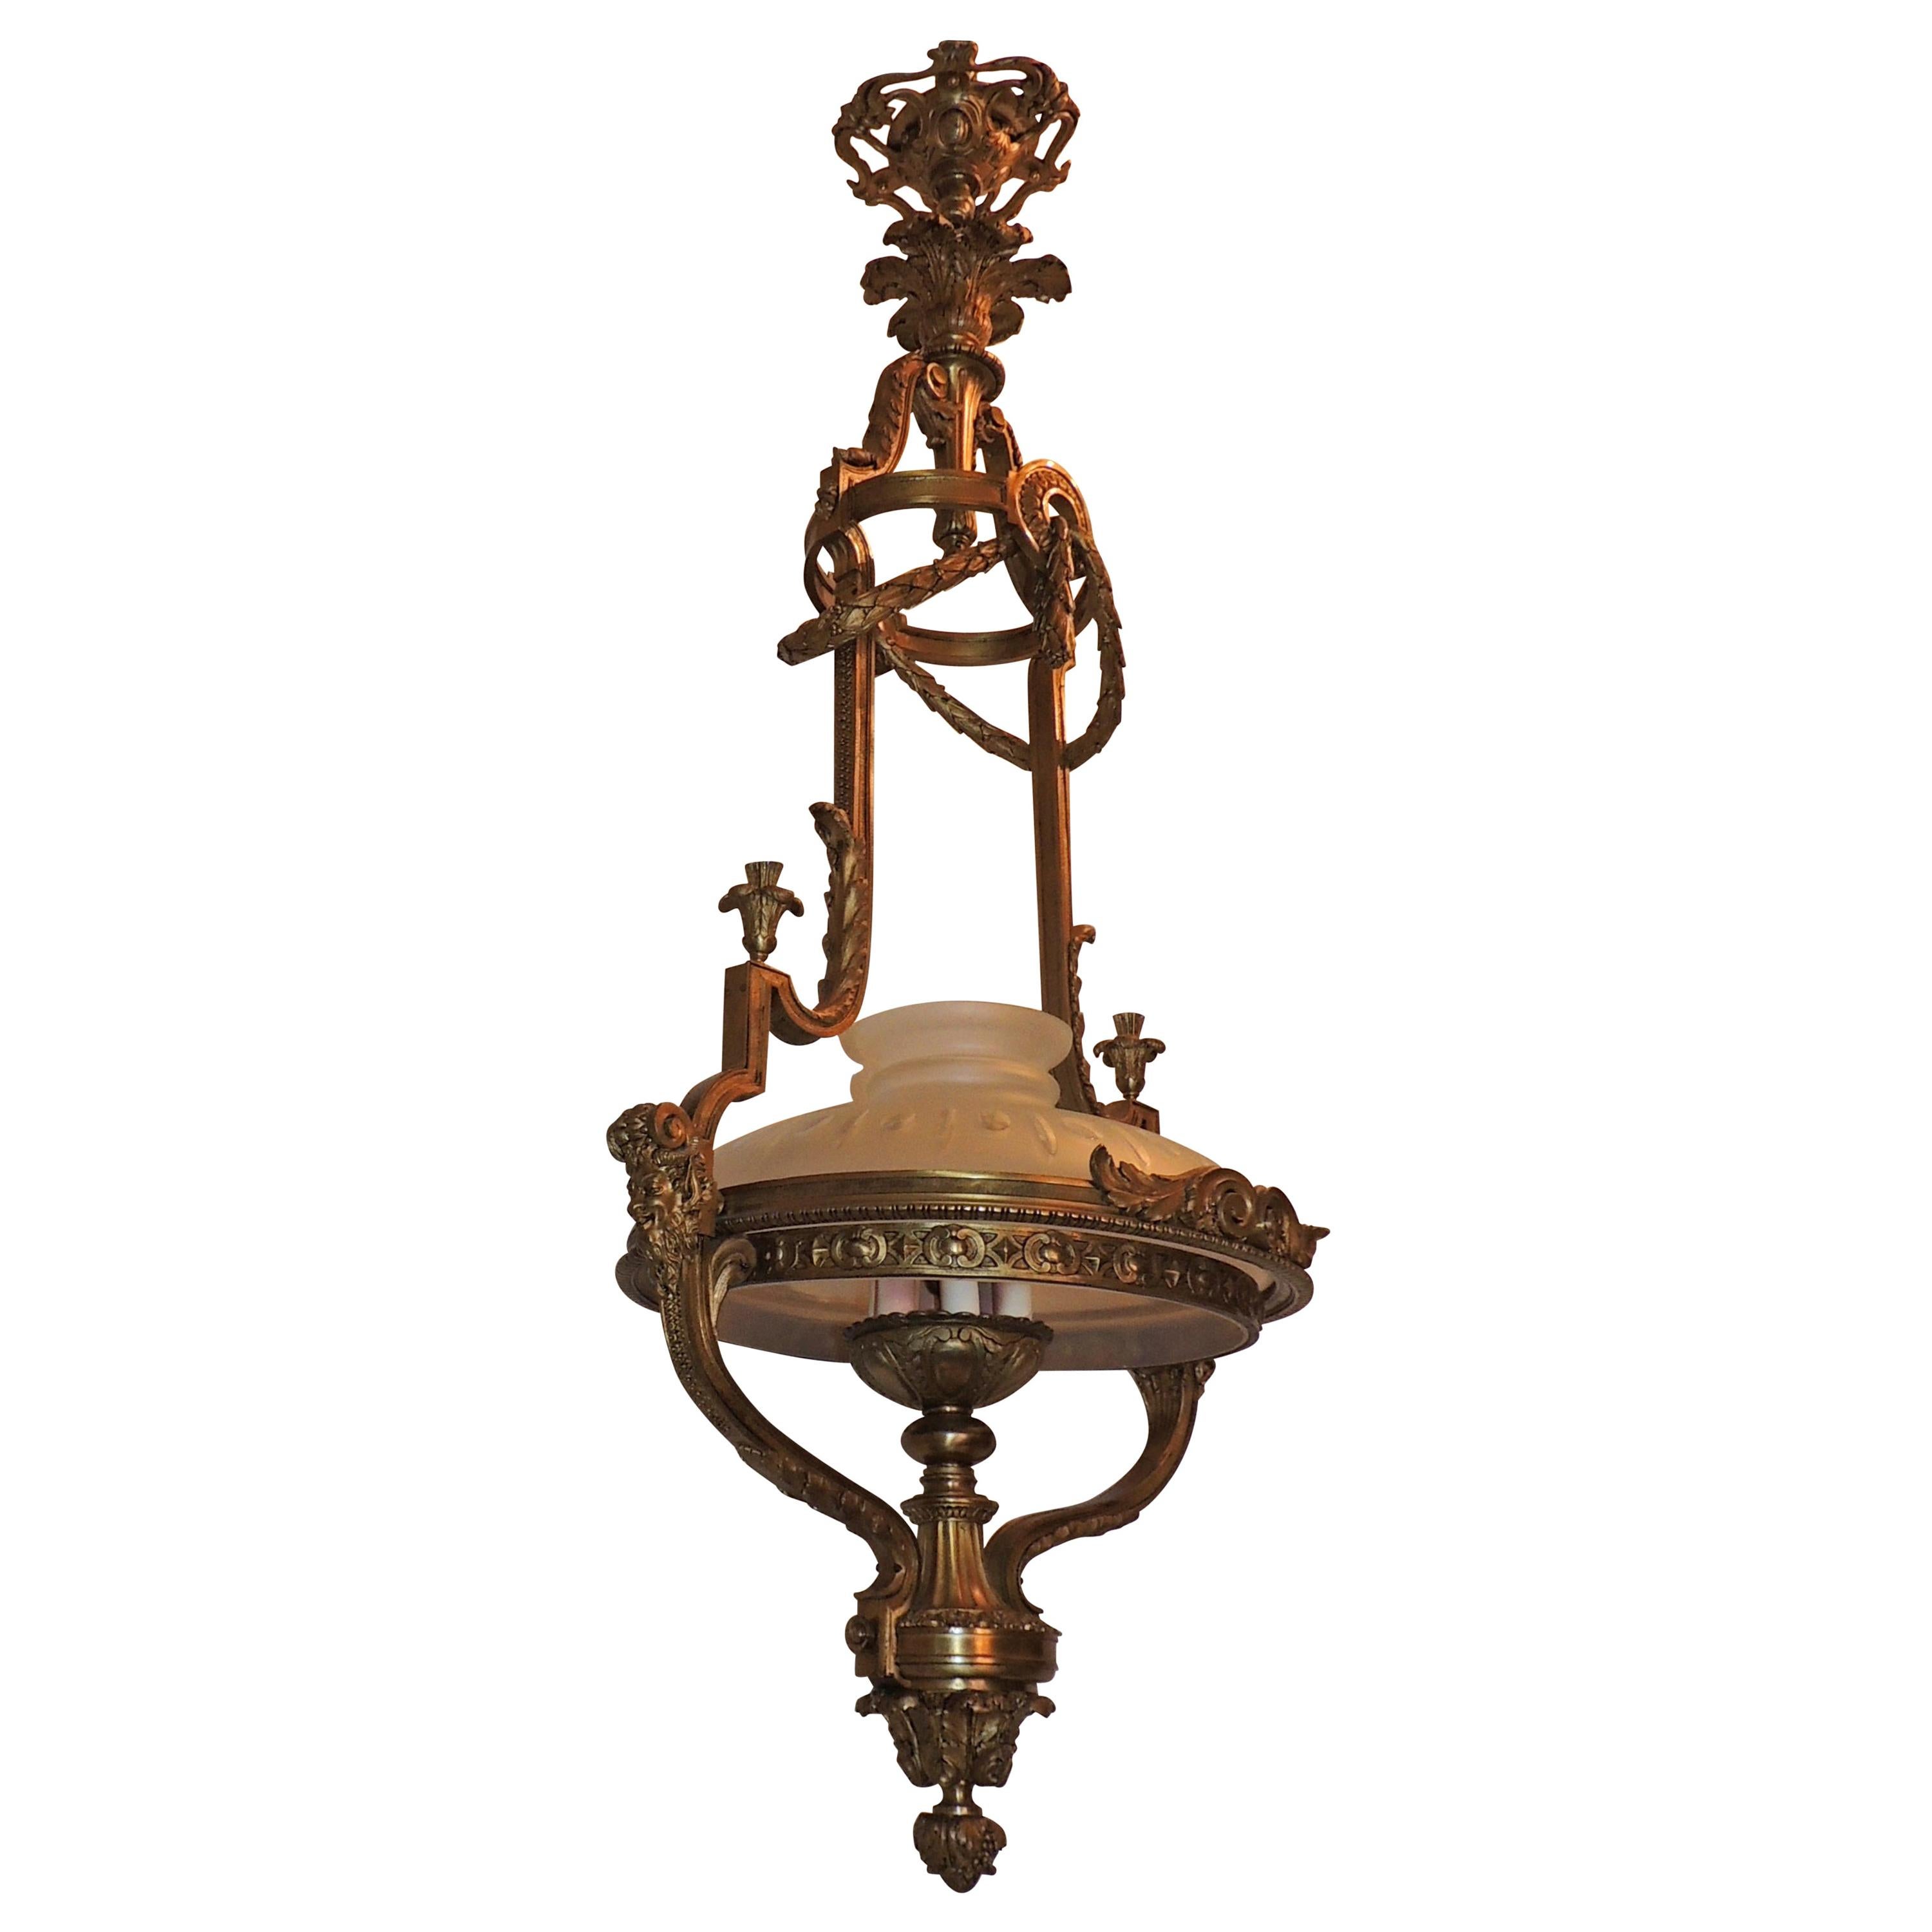 Monumentale lanterne de lustre à globe dépoli en bronze doré de style victorien français